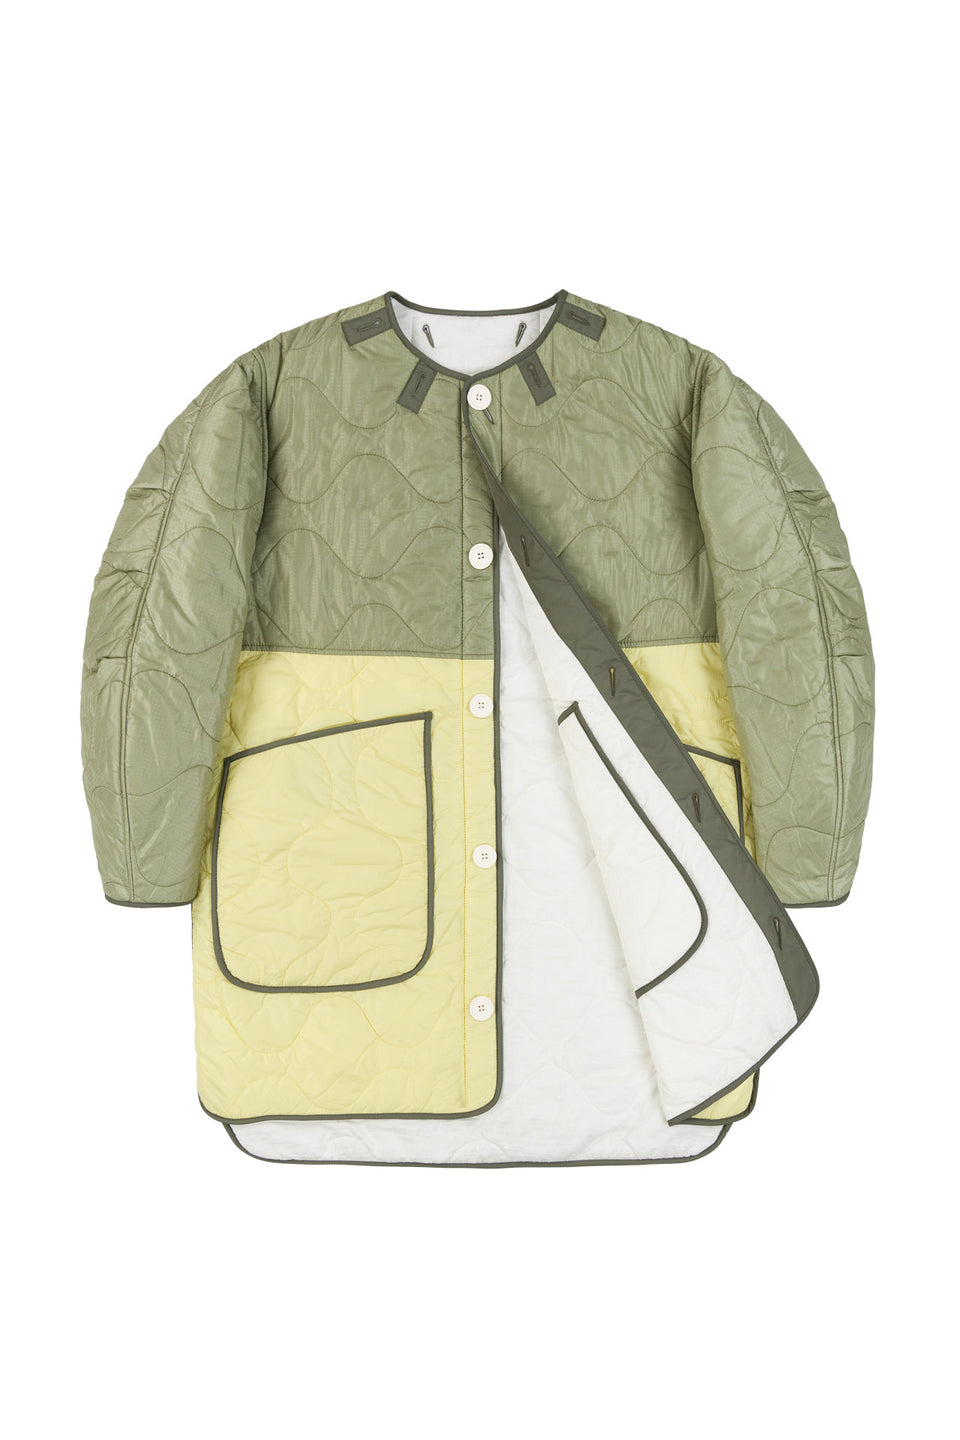 Colourblock Quilt Jacket - Pale Sage / White (listing page thumbnail)